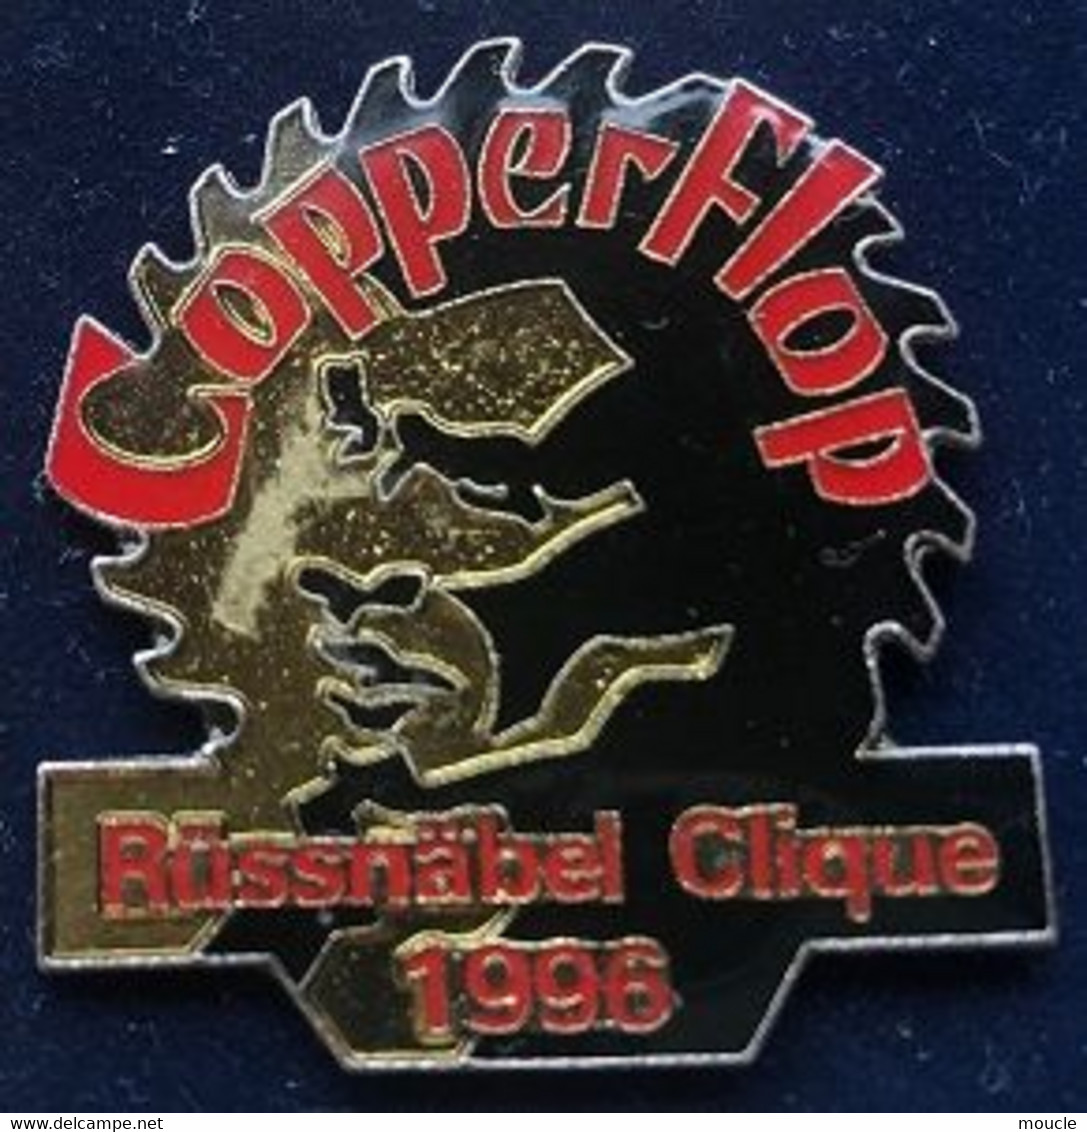 COPPERFLOP - RÜSSNÄBEL CLIQUE 1996 - FOND NOIR - ROUGE - DAVID COPPERFIELD - MAGICIEN - MAGIE - (29) - Berühmte Personen